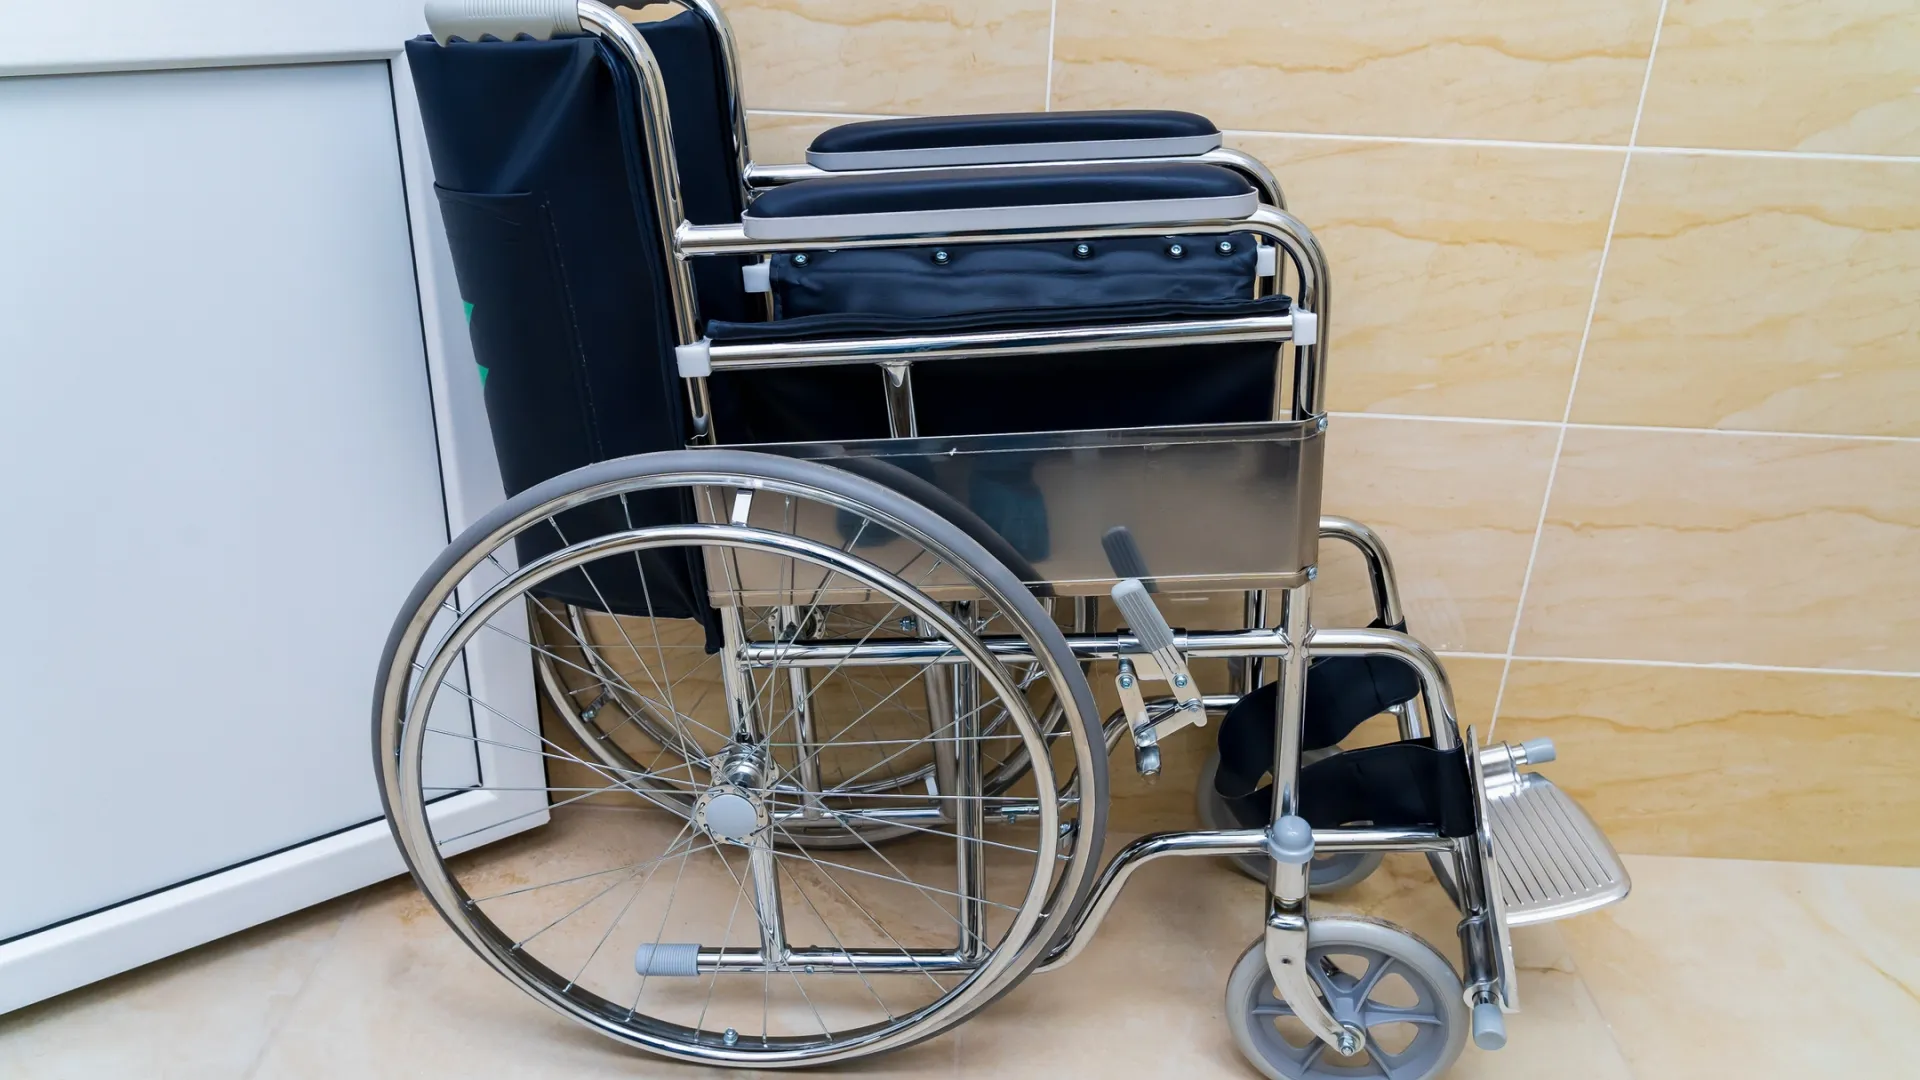 Клиника должна устранить нарушения прав маломобильных ямальцев. Фото: Gagarin Iurii / Shutterstock / Fotodom